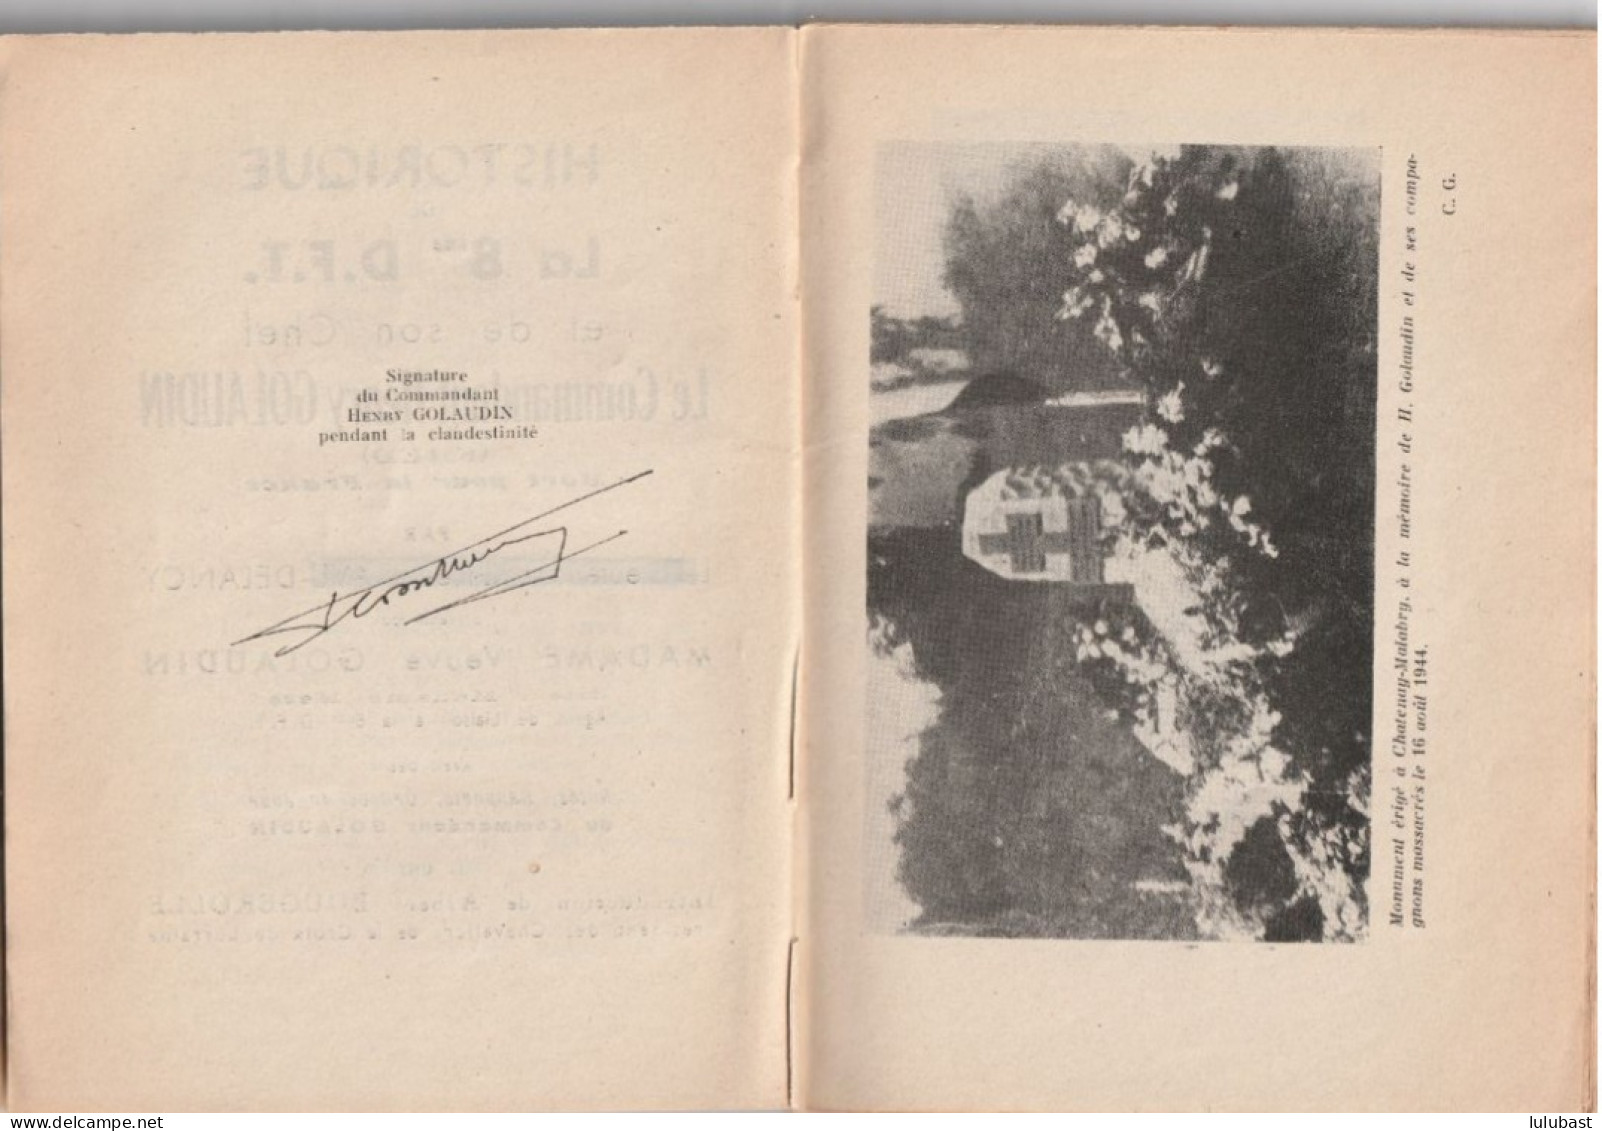 Historique De La 8ème D.F.T. - Son Chef Le Commandant H. GOLAUDIN. Dédicacé Par La Veuve - Chatenay-Malabry. - War 1939-45